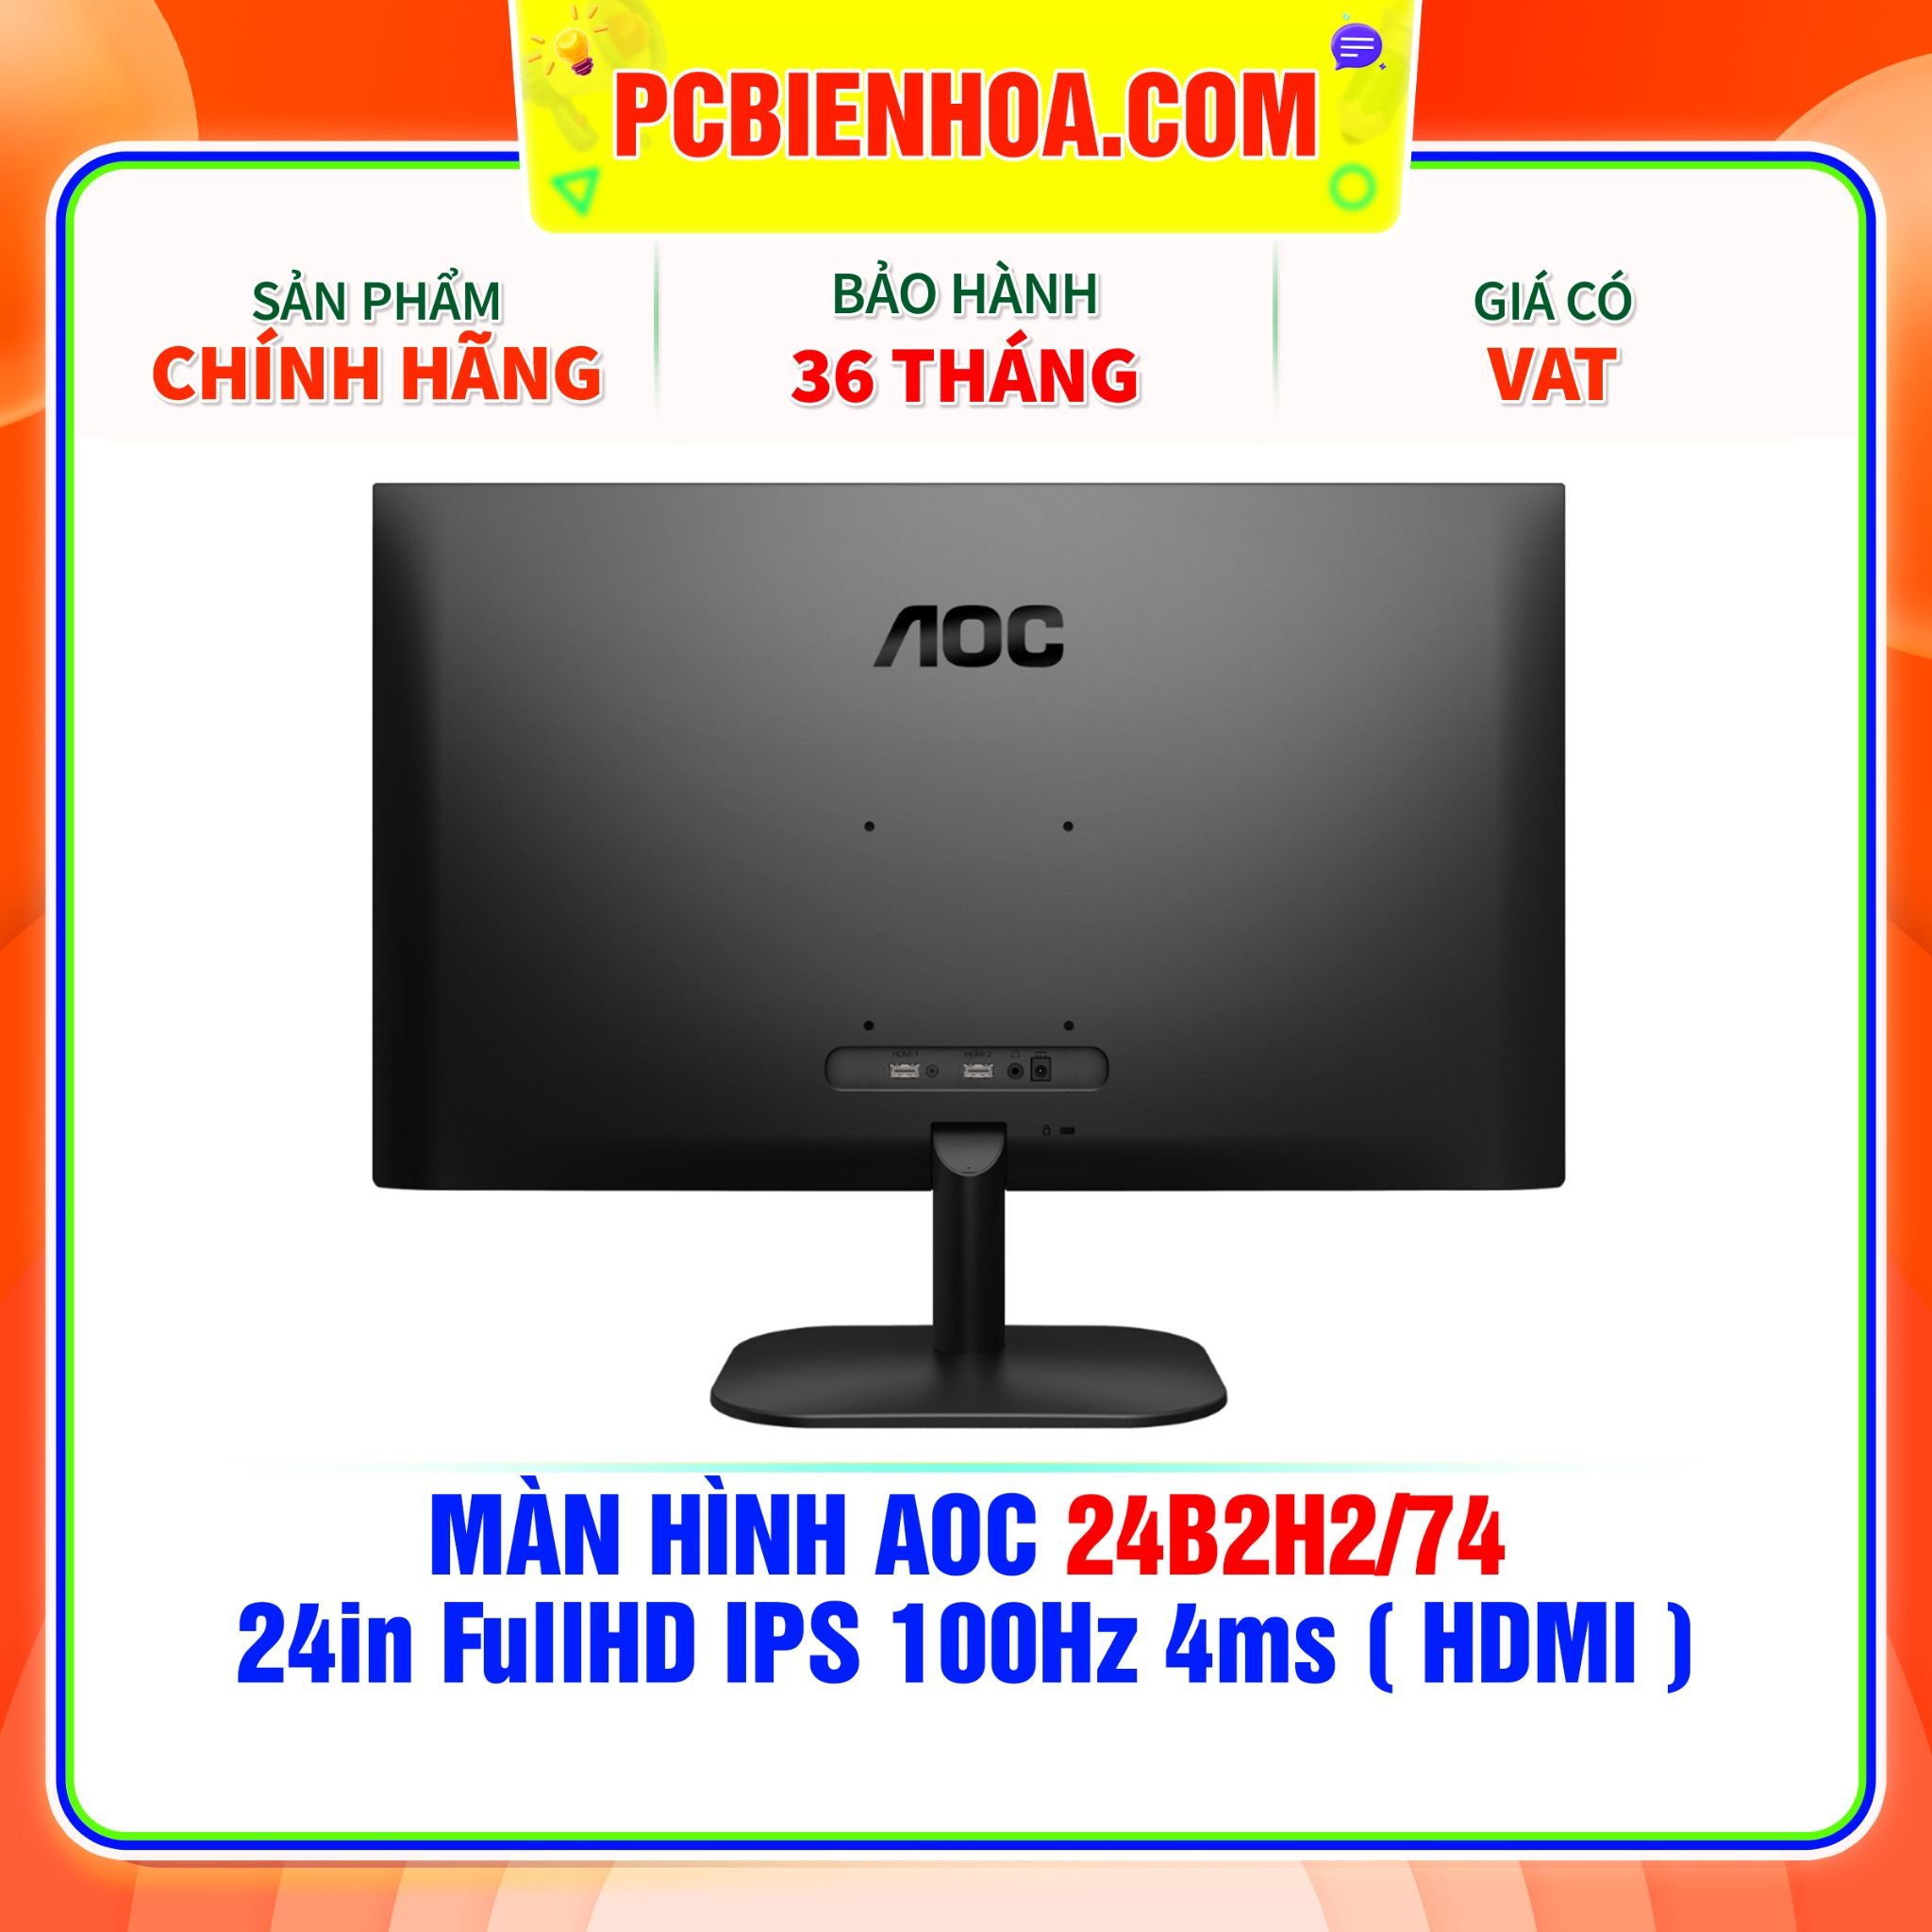  MÀN HÌNH AOC 24B2H2/74 24in FullHD IPS 100Hz 4ms ( HDMI ) 